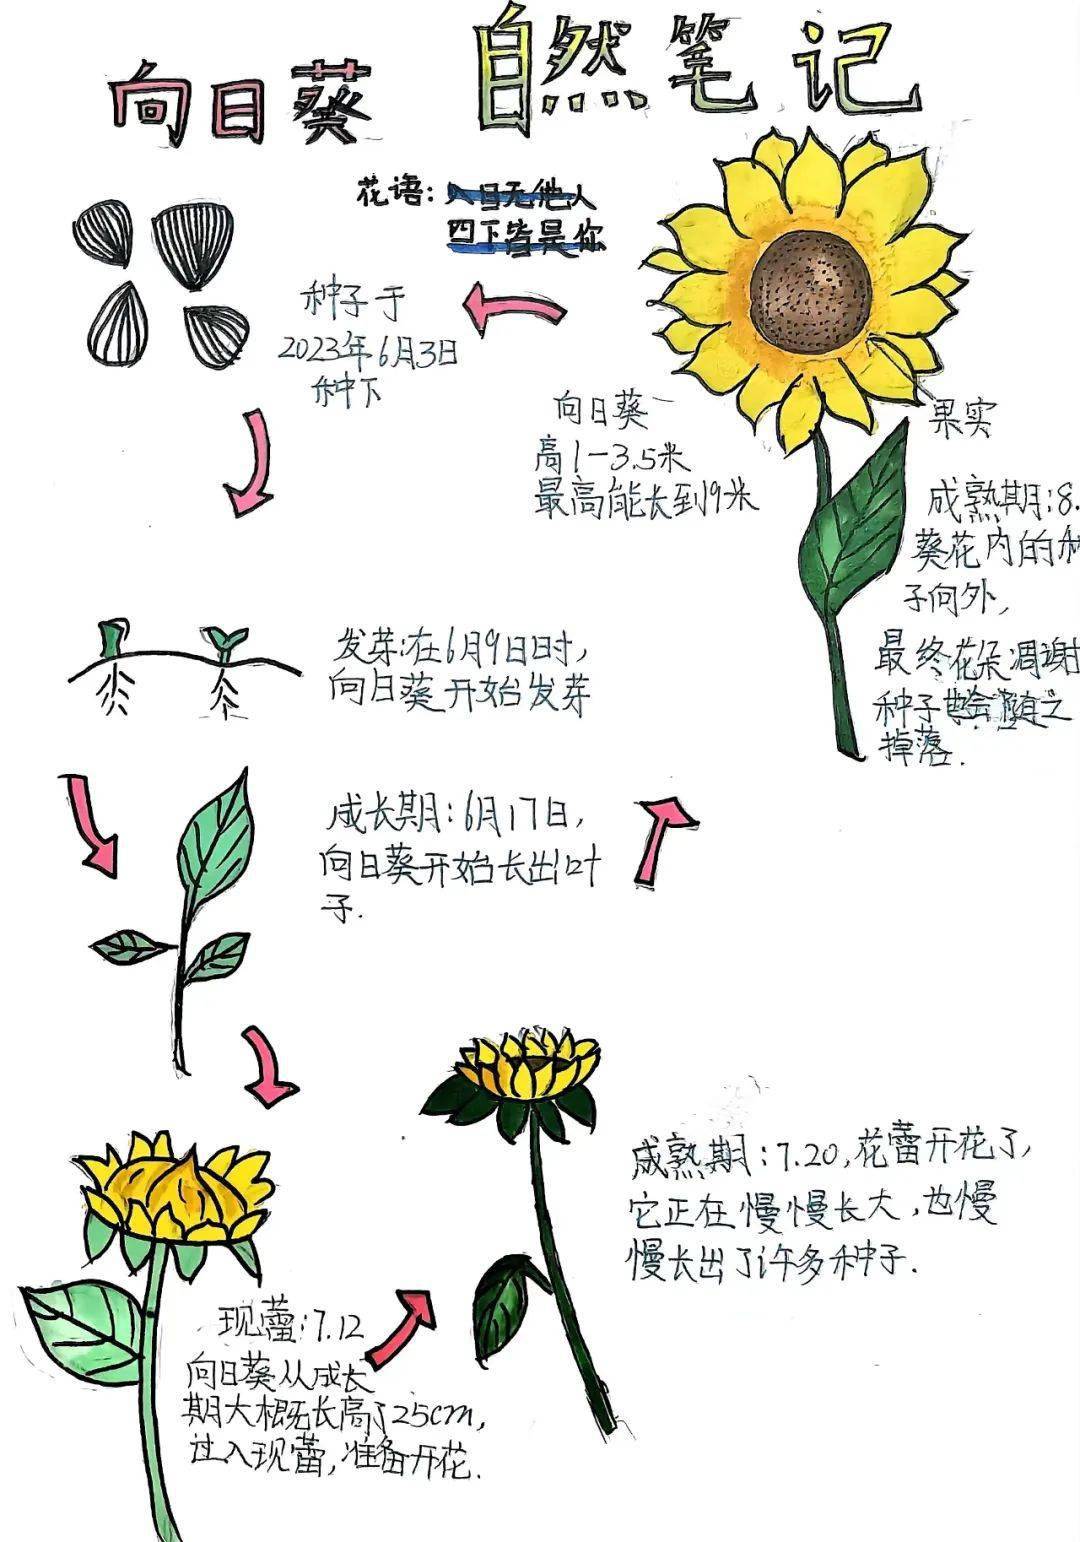 自然笔记向日葵作品图片